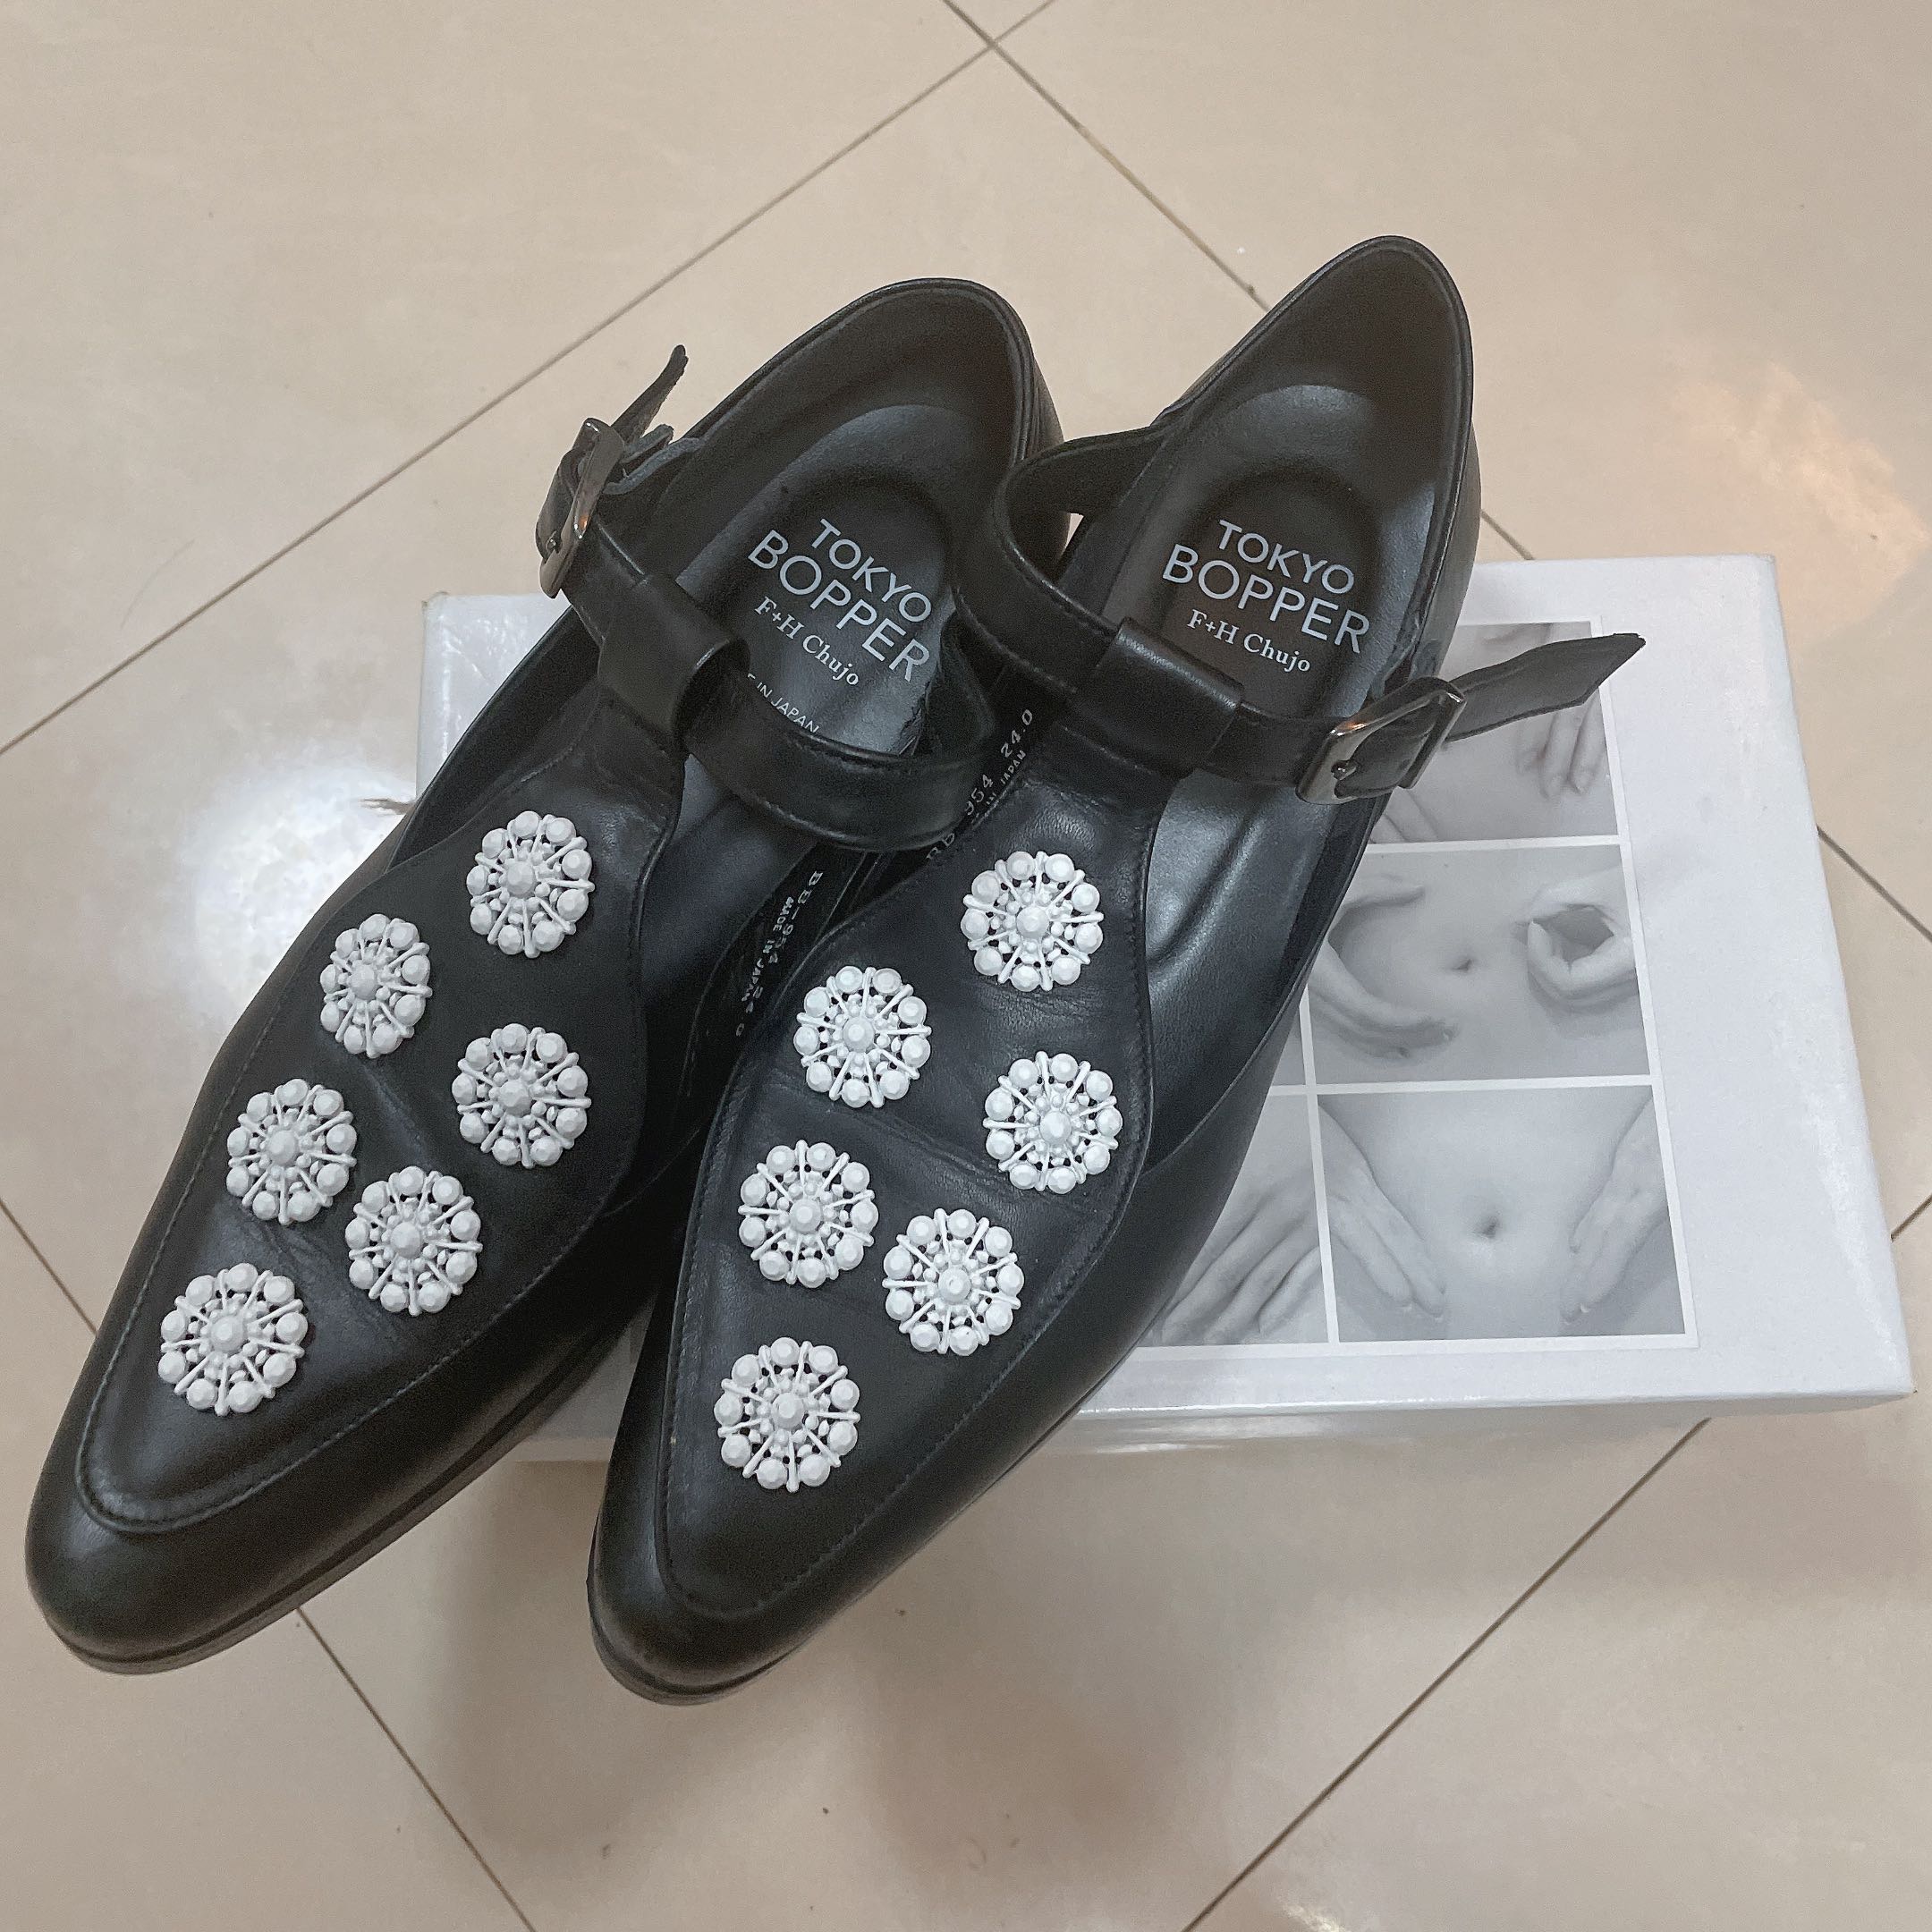 Tokyo Bopper shoes No.954 / BLK-WHT (黒白) Shoes 9成新連盒38, 女裝